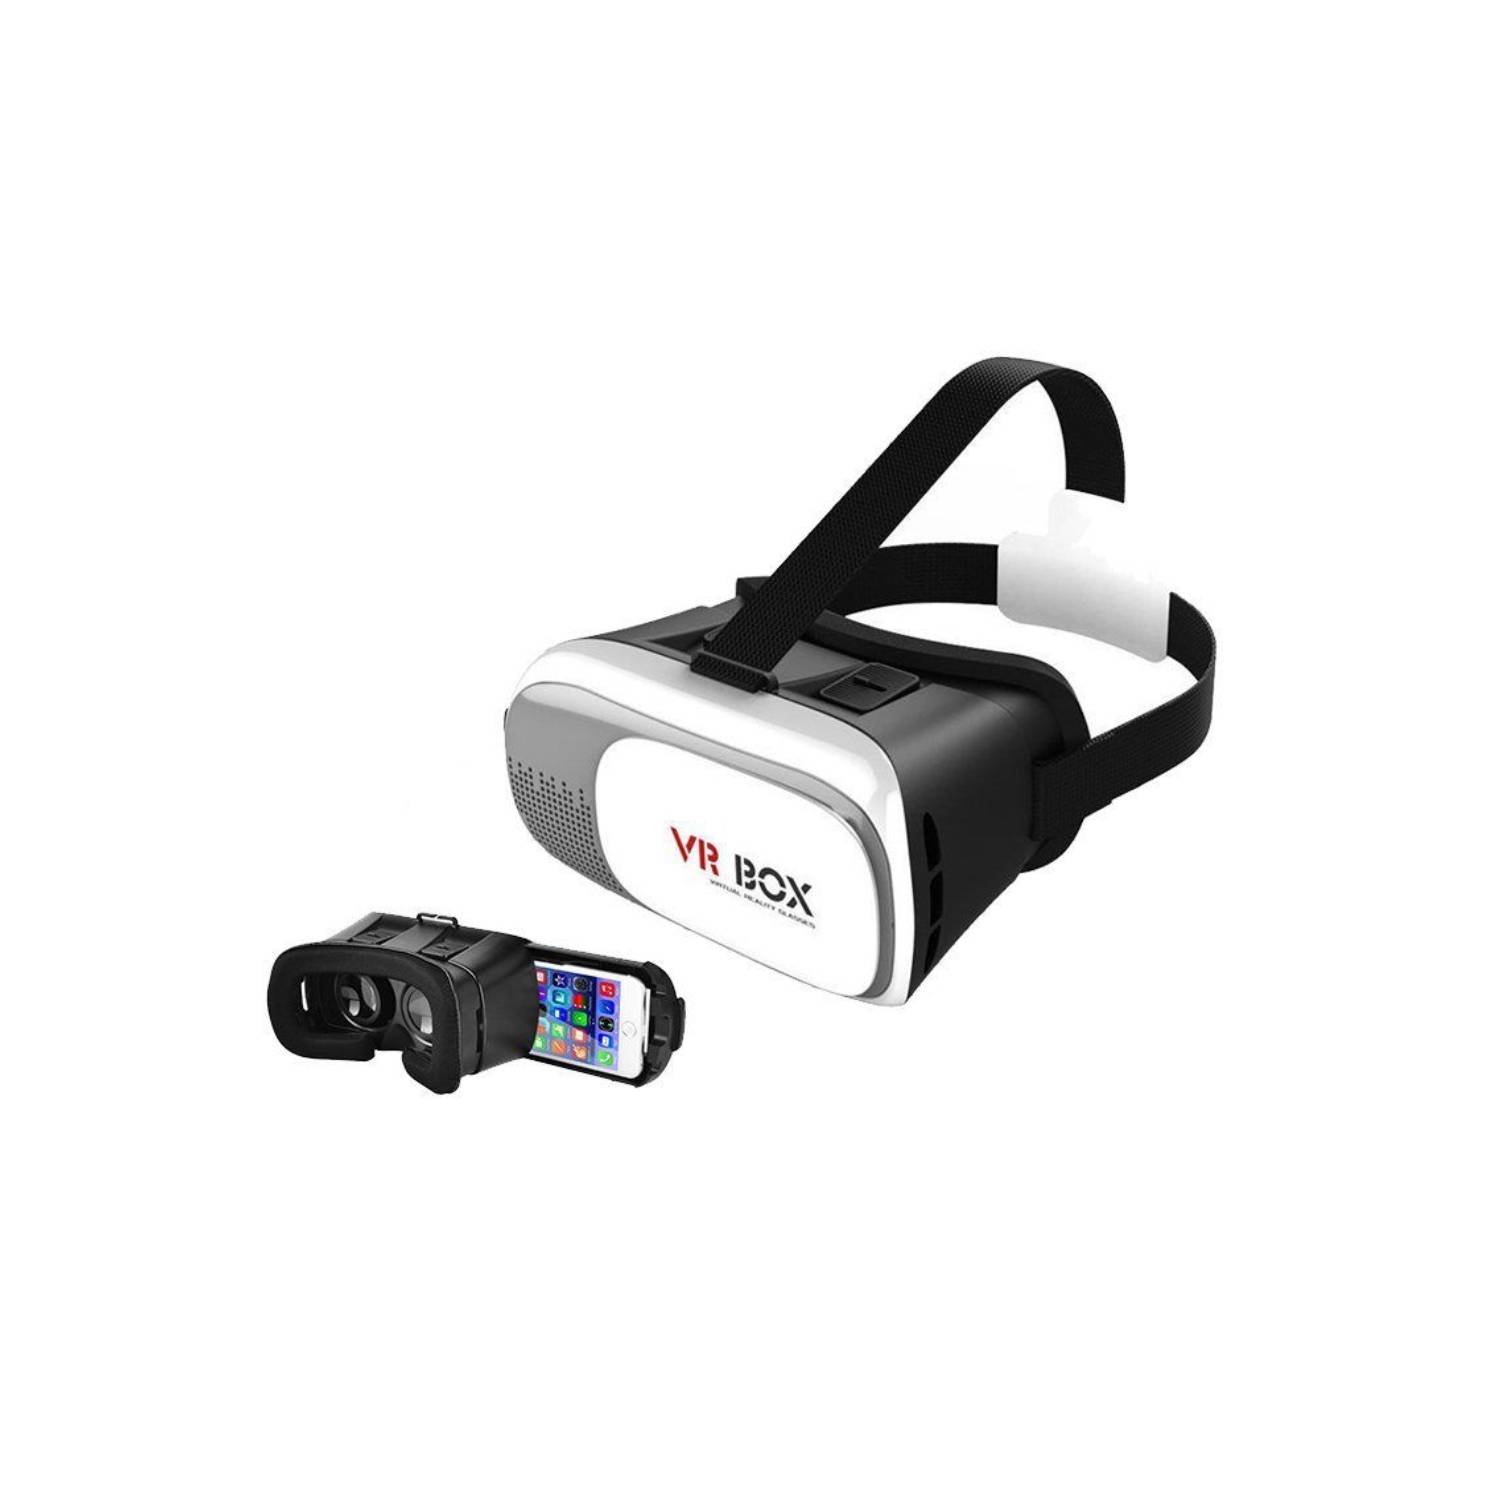 Gafas Realidad Virtual Smartphone 3D Vr Box + Control Remoto